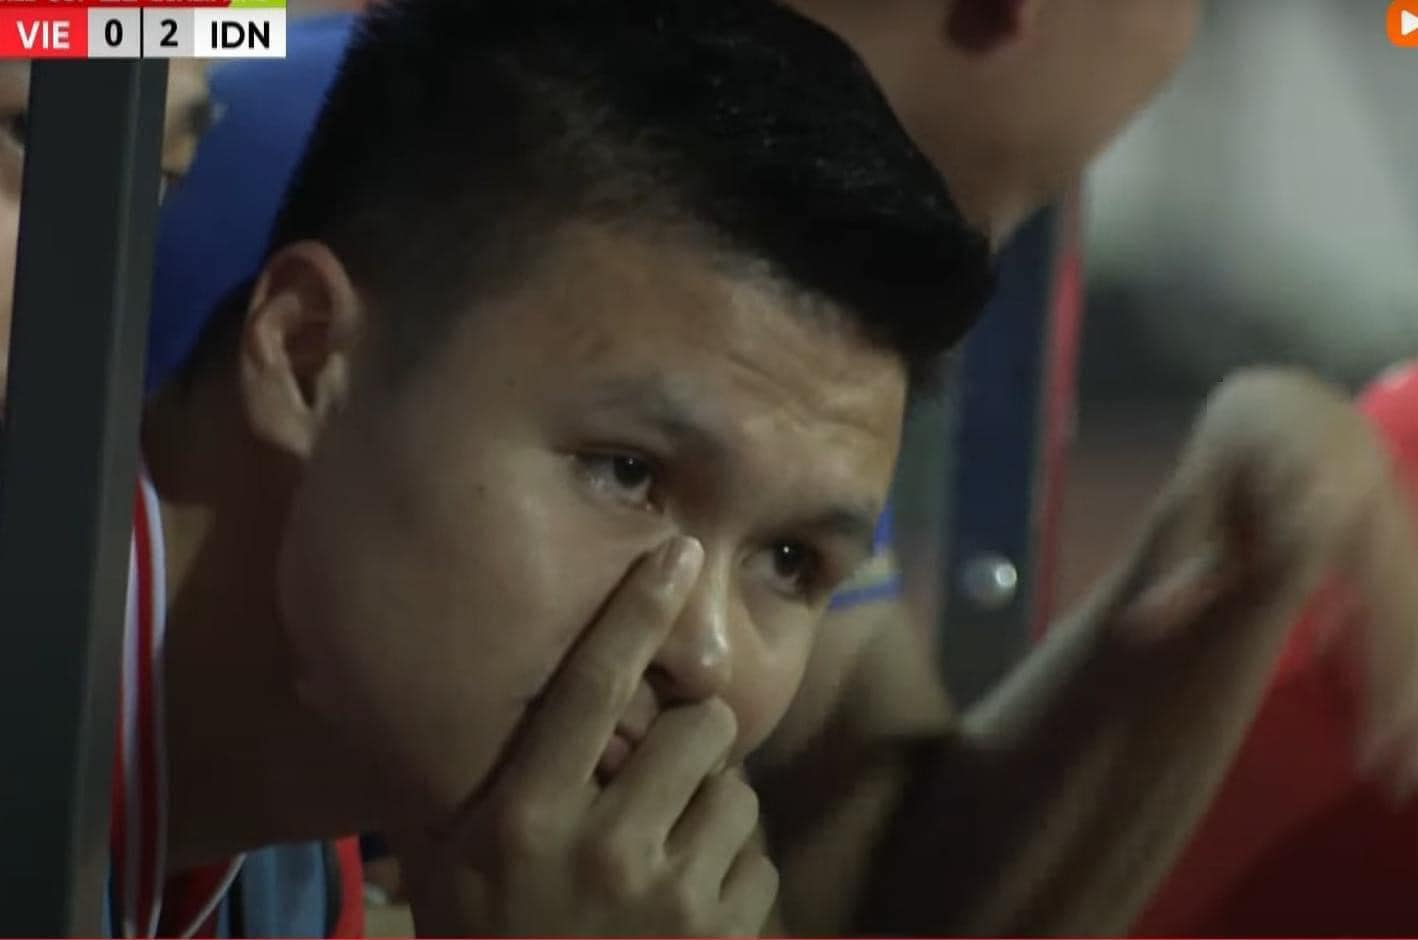 Trực tiếp bóng đá Việt Nam - Indonesia: Việt Nam nhận 2 bàn thua liên tiếp, Quang Hải bật khóc vì không được vào sân - ảnh 4